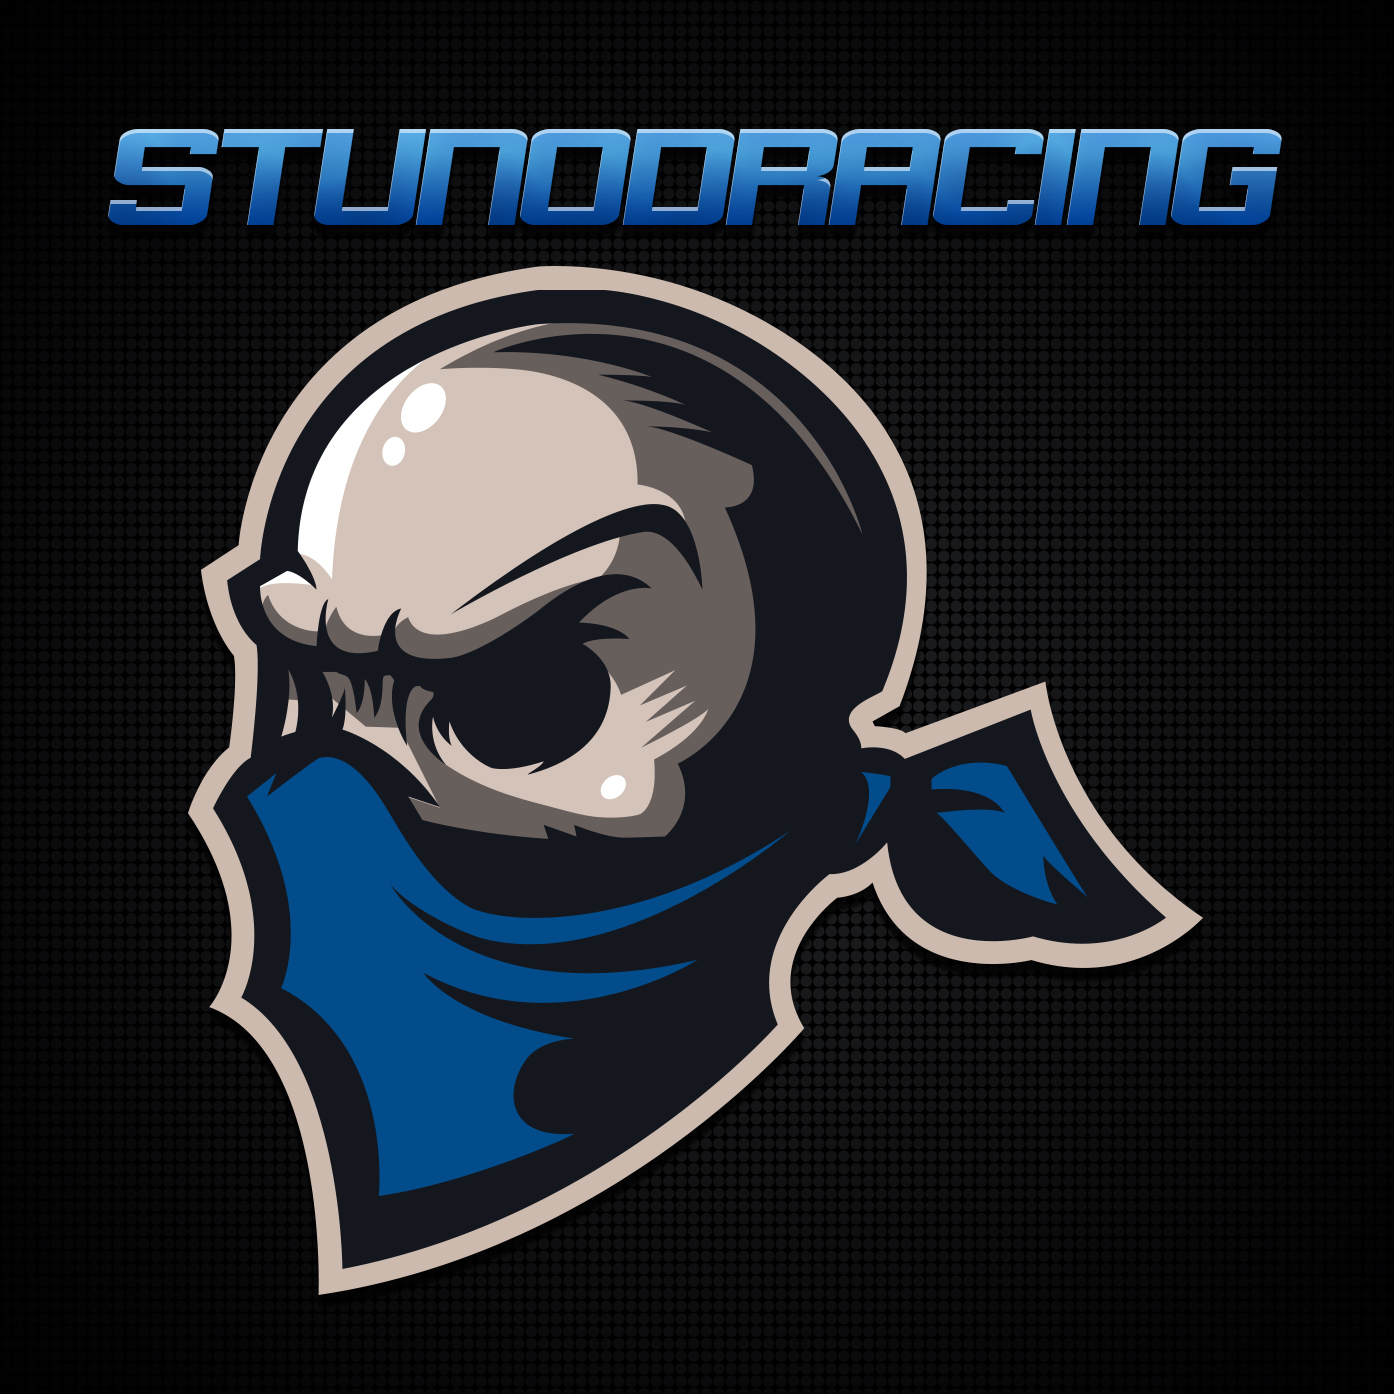 Bandana-Skull_Logo-StunodRacing.jpg